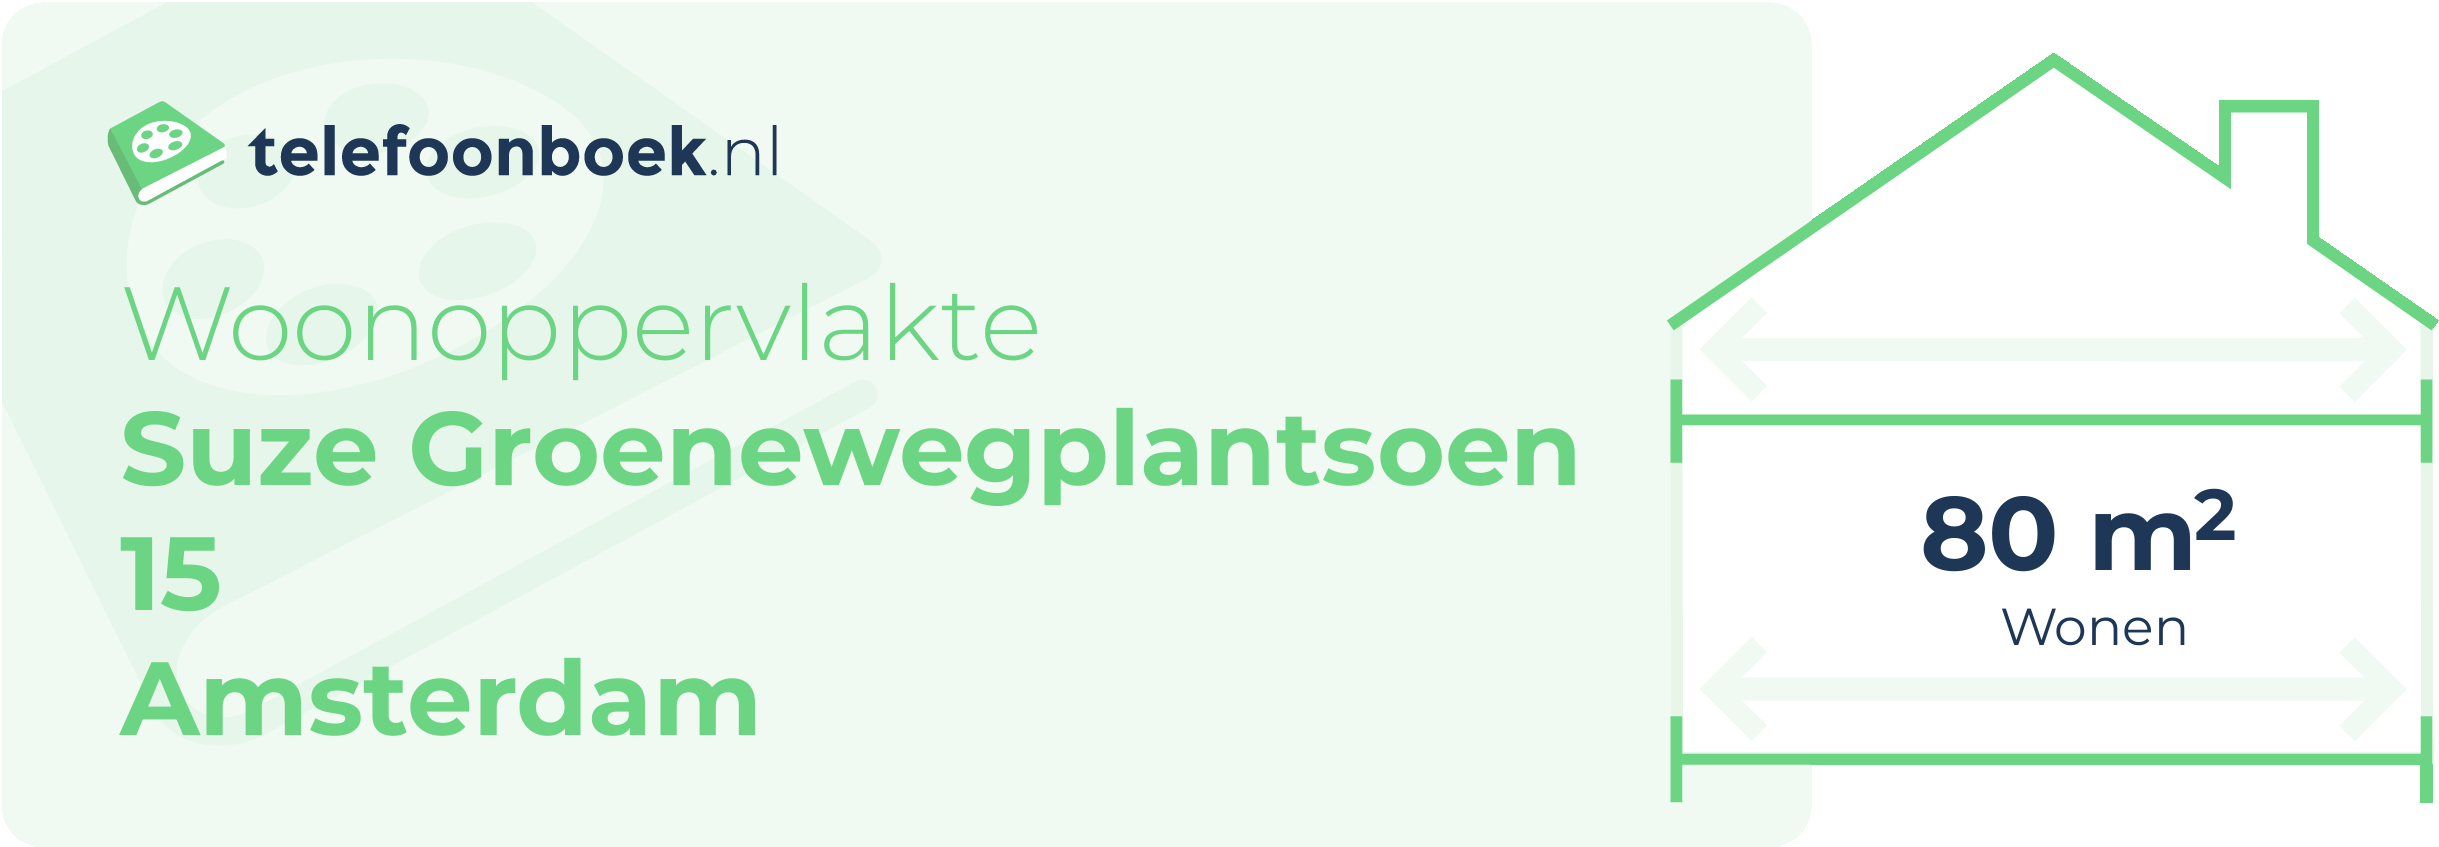 Woonoppervlakte Suze Groenewegplantsoen 15 Amsterdam